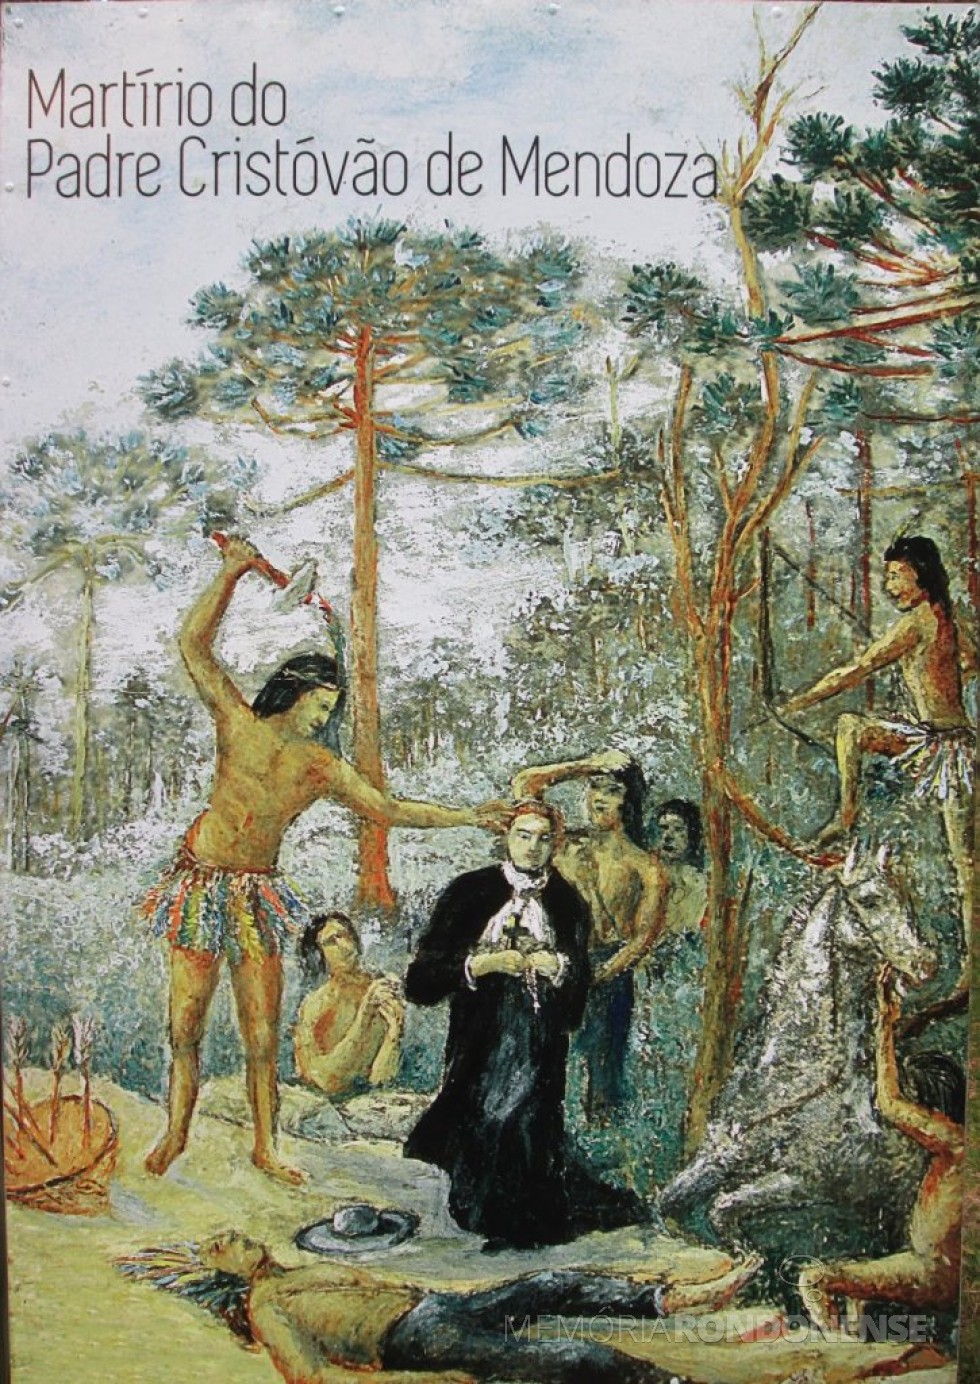 || Representação do martírio do jesuíta Cristóvão de Mendonça, no Campo dos Bugres,  junto ao arroio Ibiá, em abril de 1635.
Imagem: Acervo Imagens Missioneiras - FOTO 2 - 